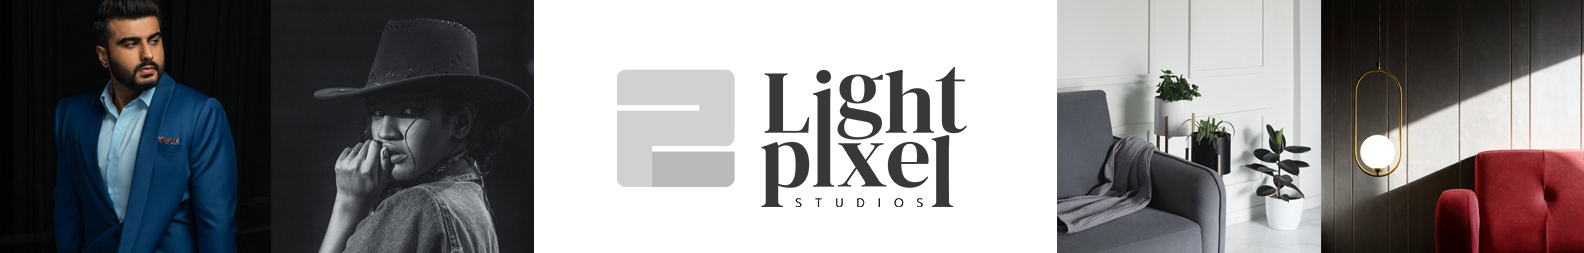 2lightpixel studio's profile banner